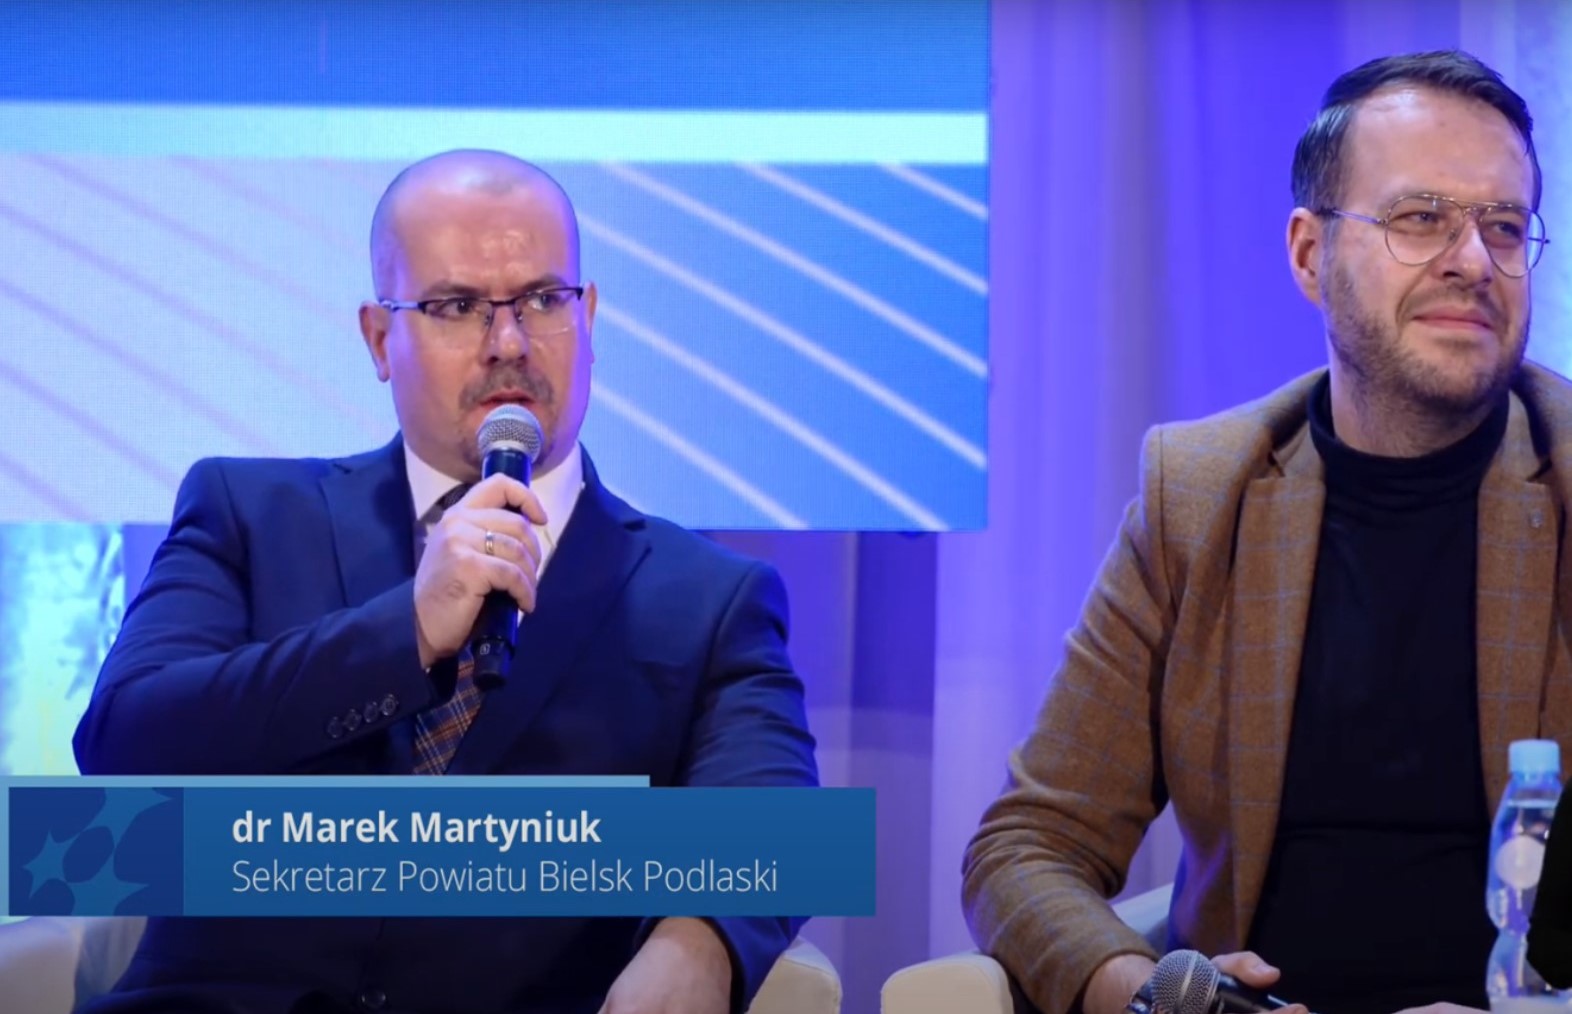 Sekretarz powiatu dr Marek Martyniuk podczas dyskusji